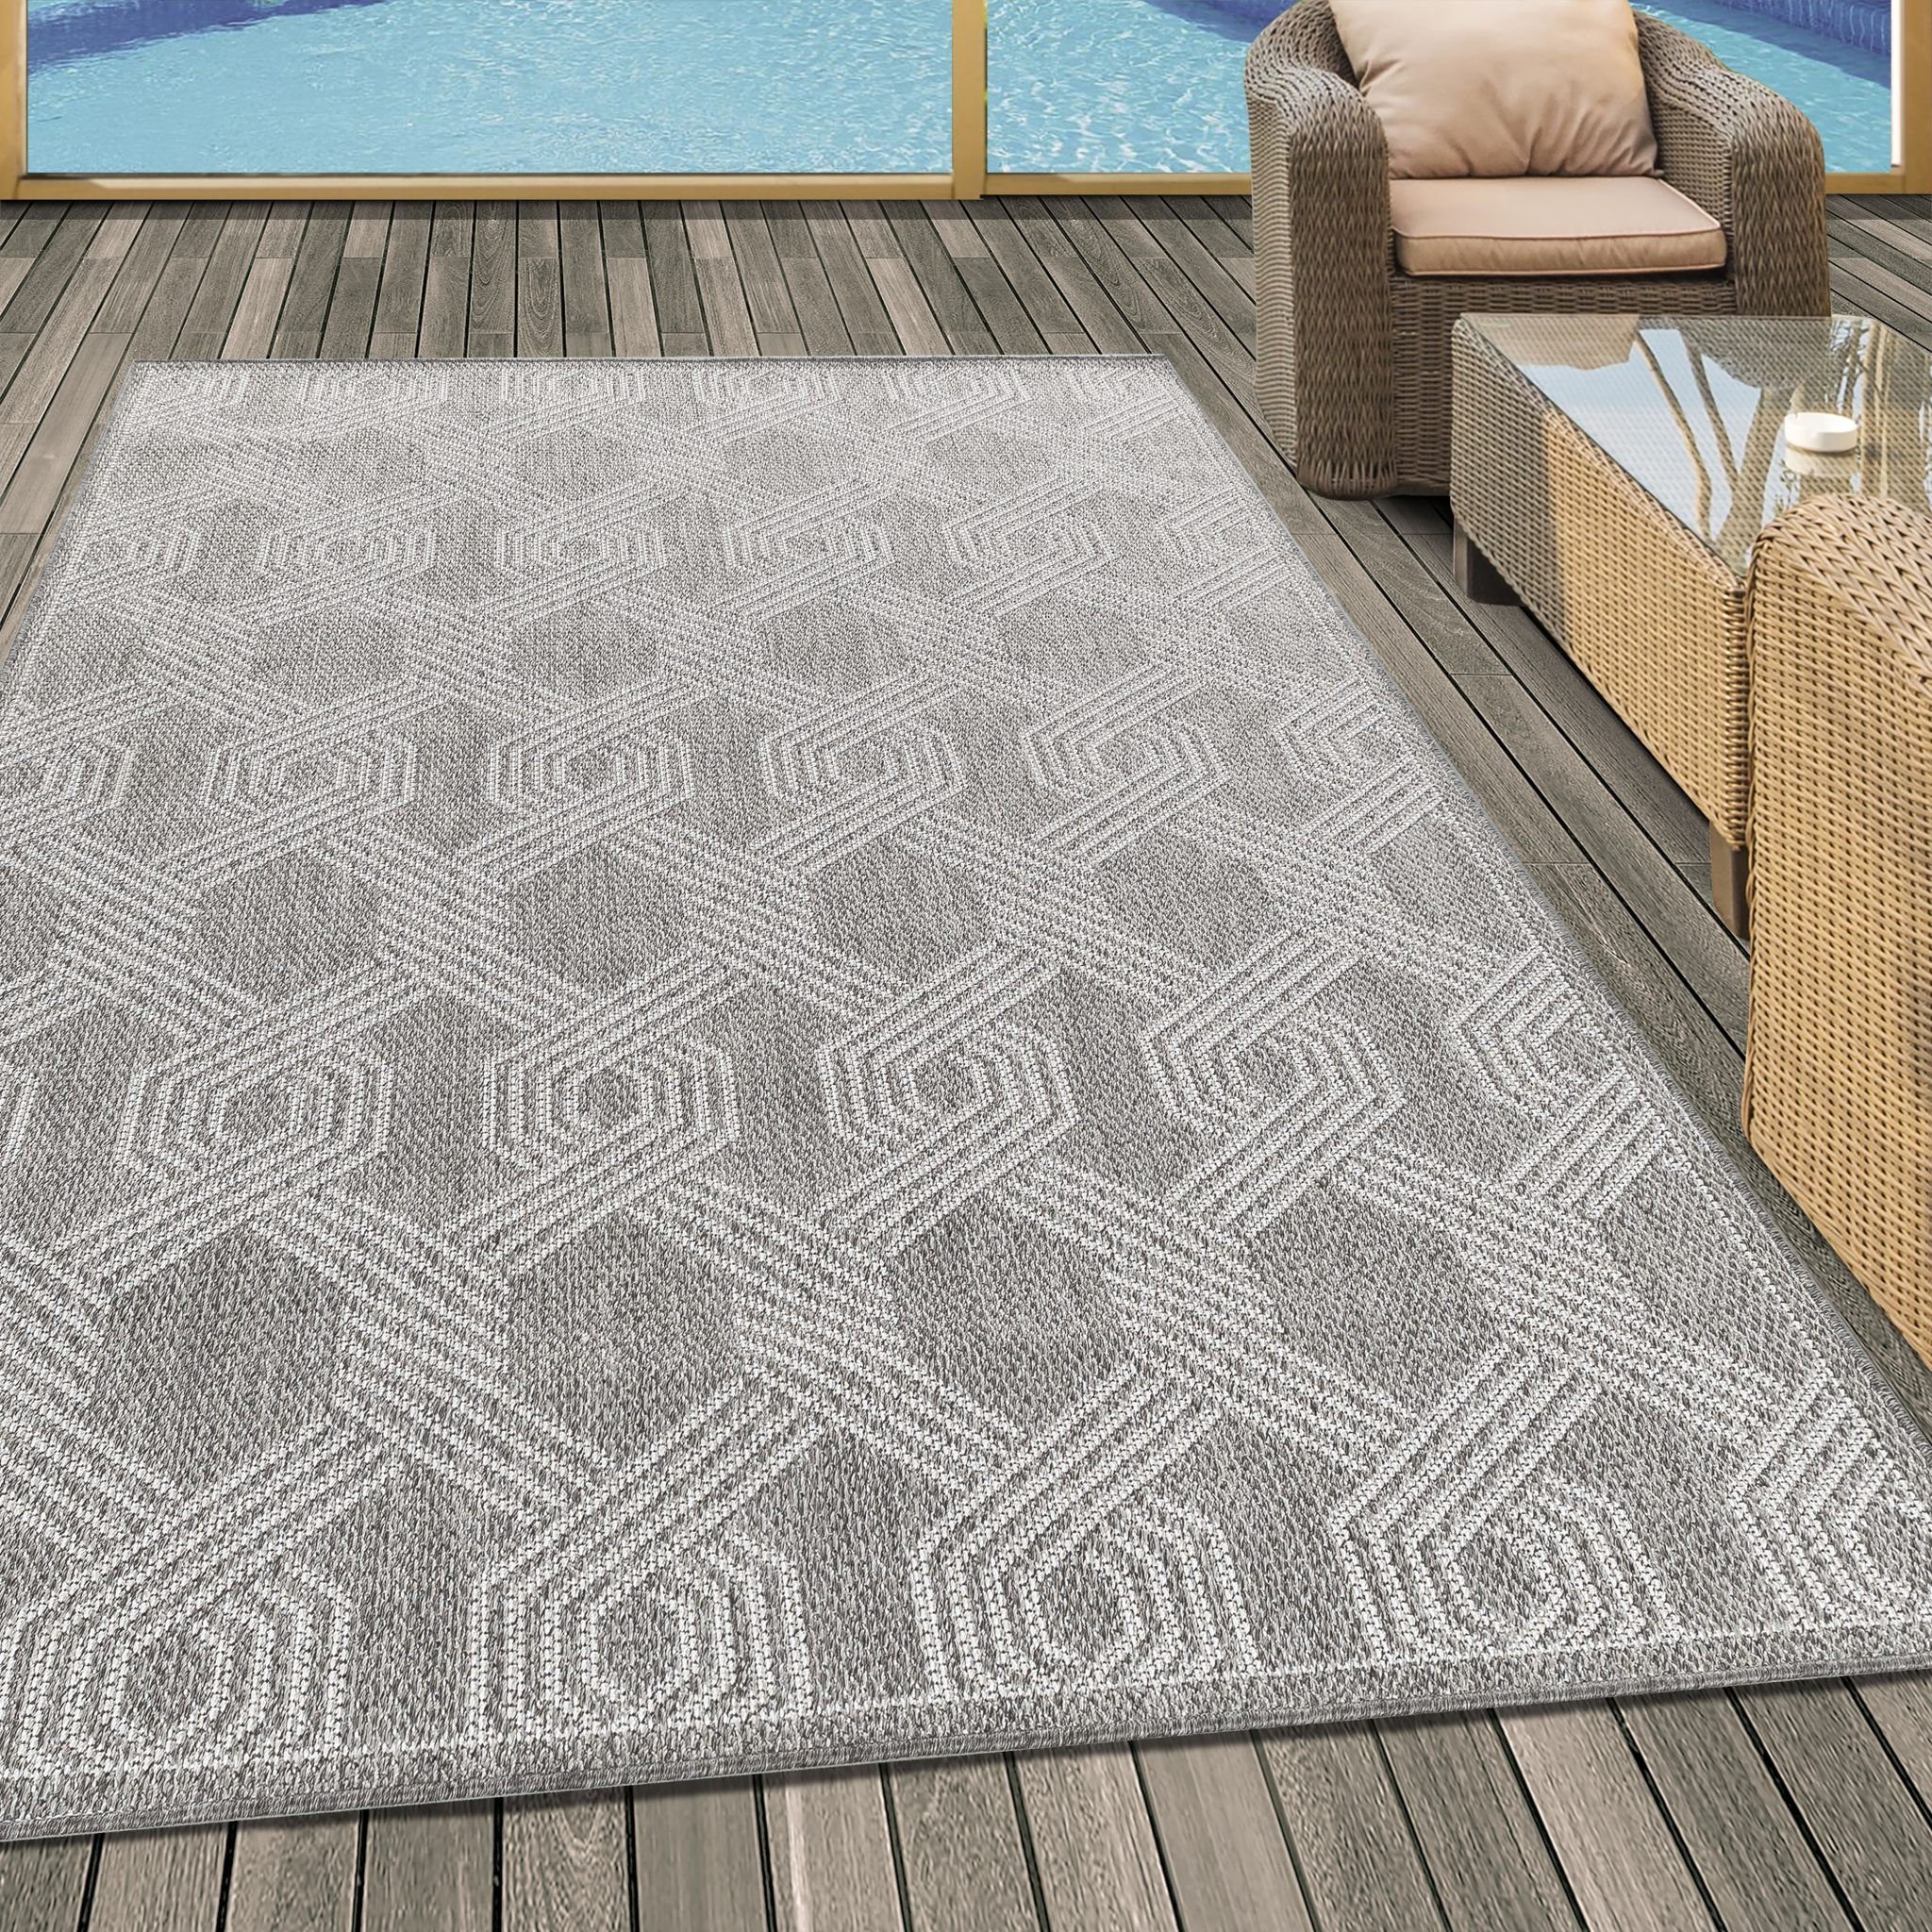 Gartenteppich Outdoorteppich Muster Miovani Terrasse, Teppich Sisal